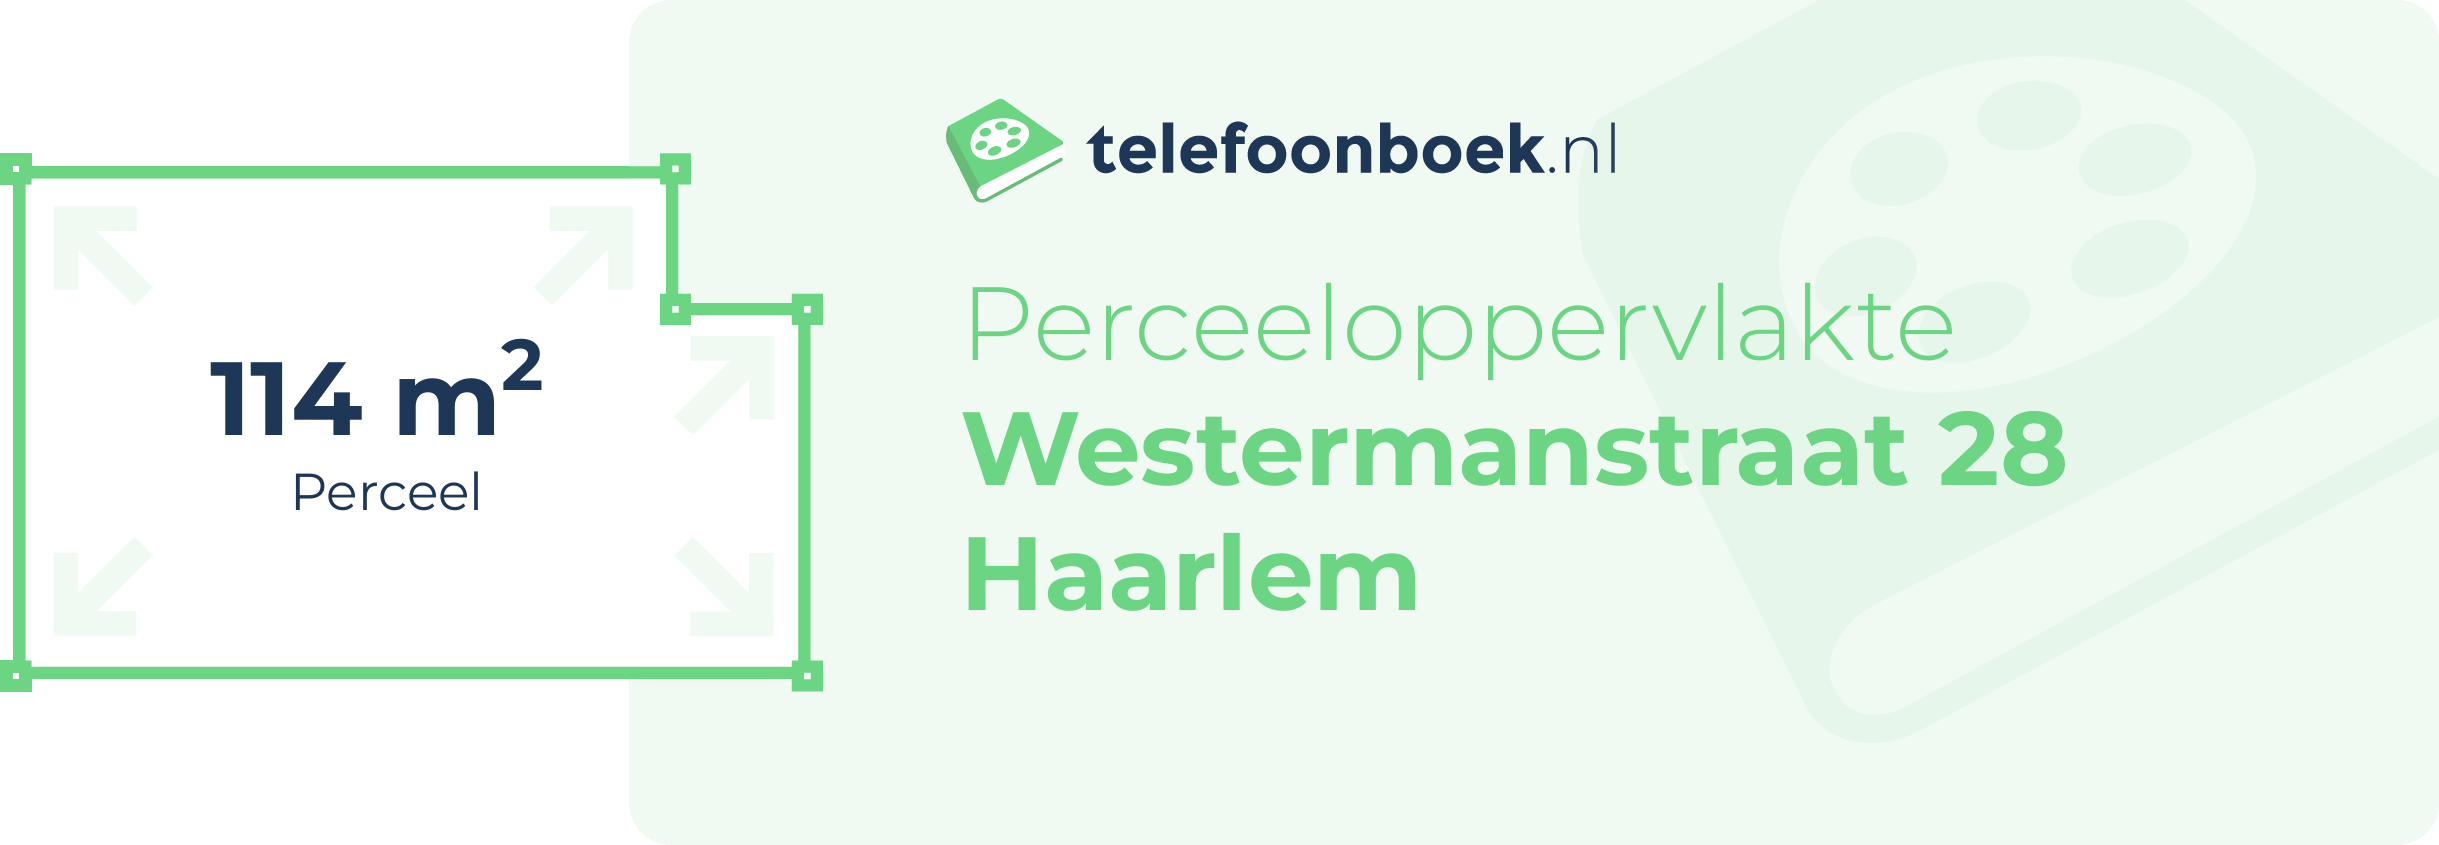 Perceeloppervlakte Westermanstraat 28 Haarlem